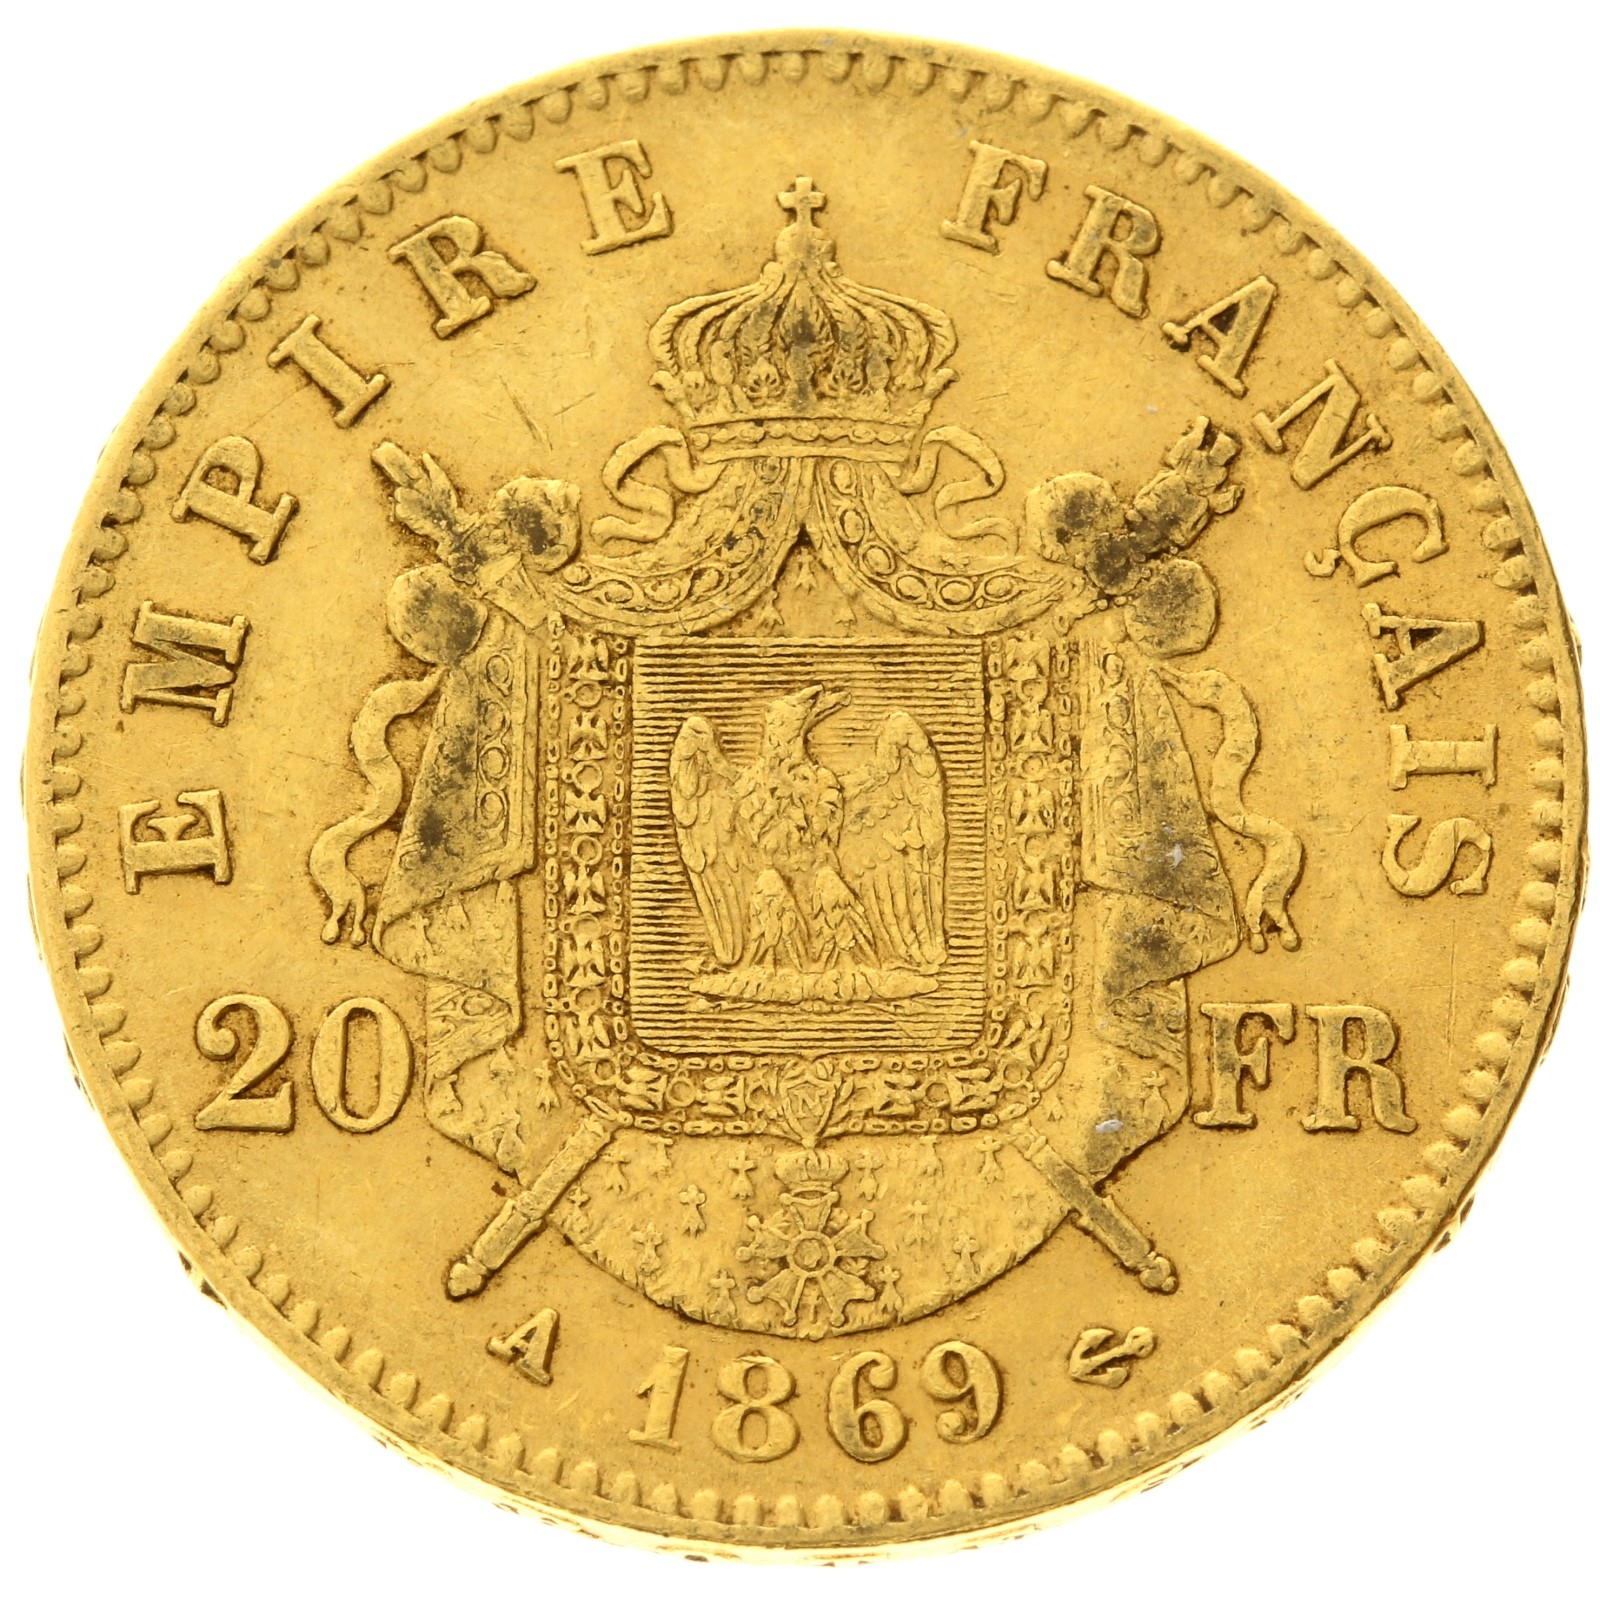 France - 20 francs - 1869 - A - Napoleon III